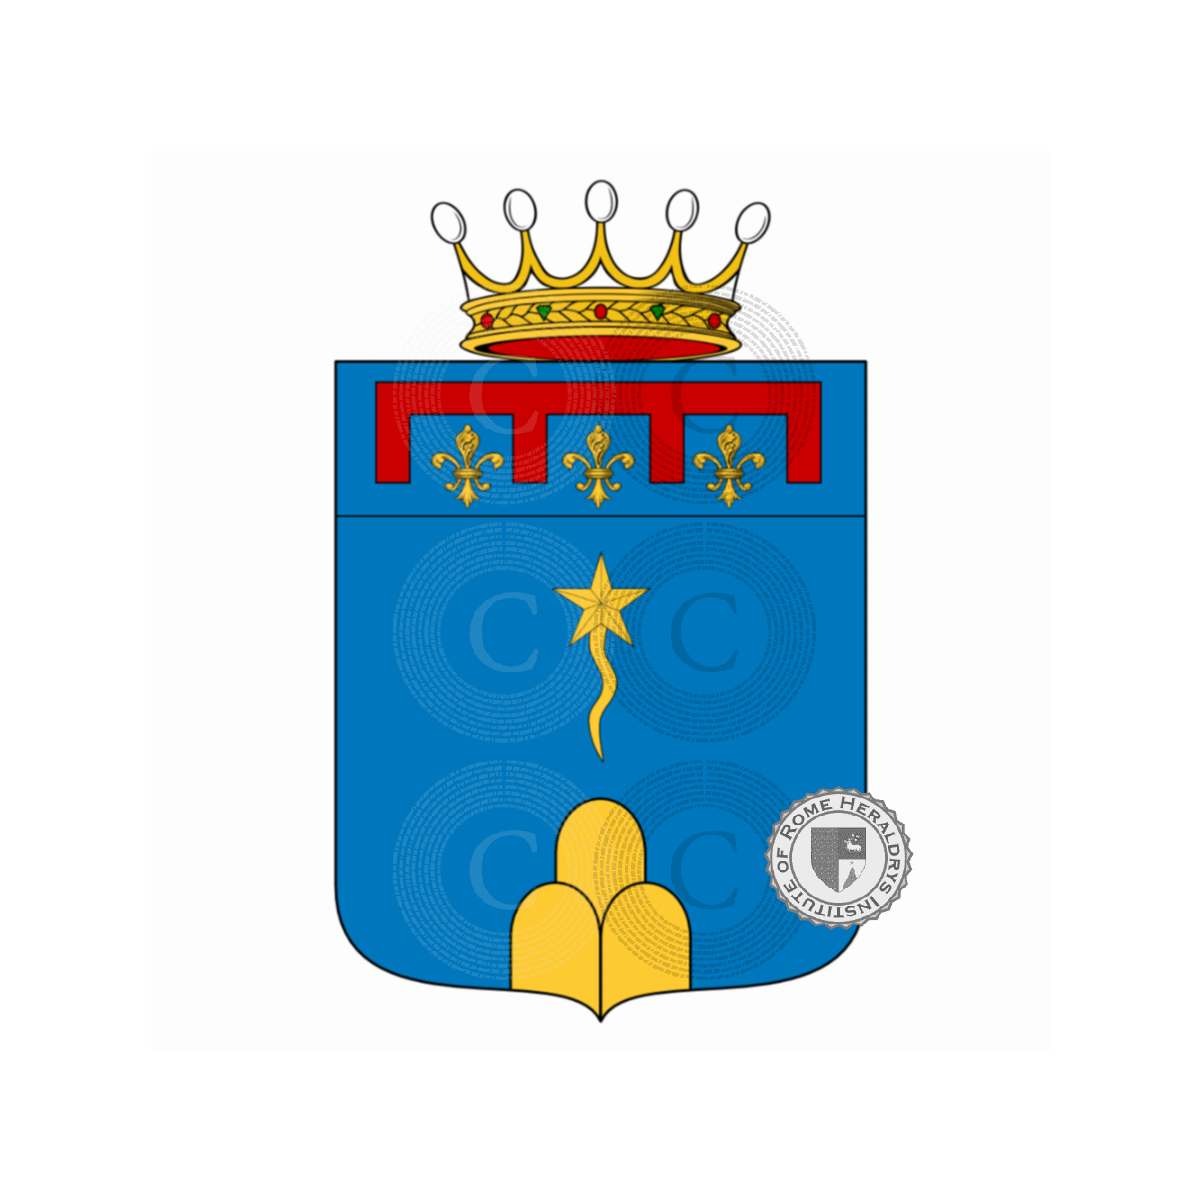 Wappen der FamilieChiarini, Chiarino,Davanzati Chiarini